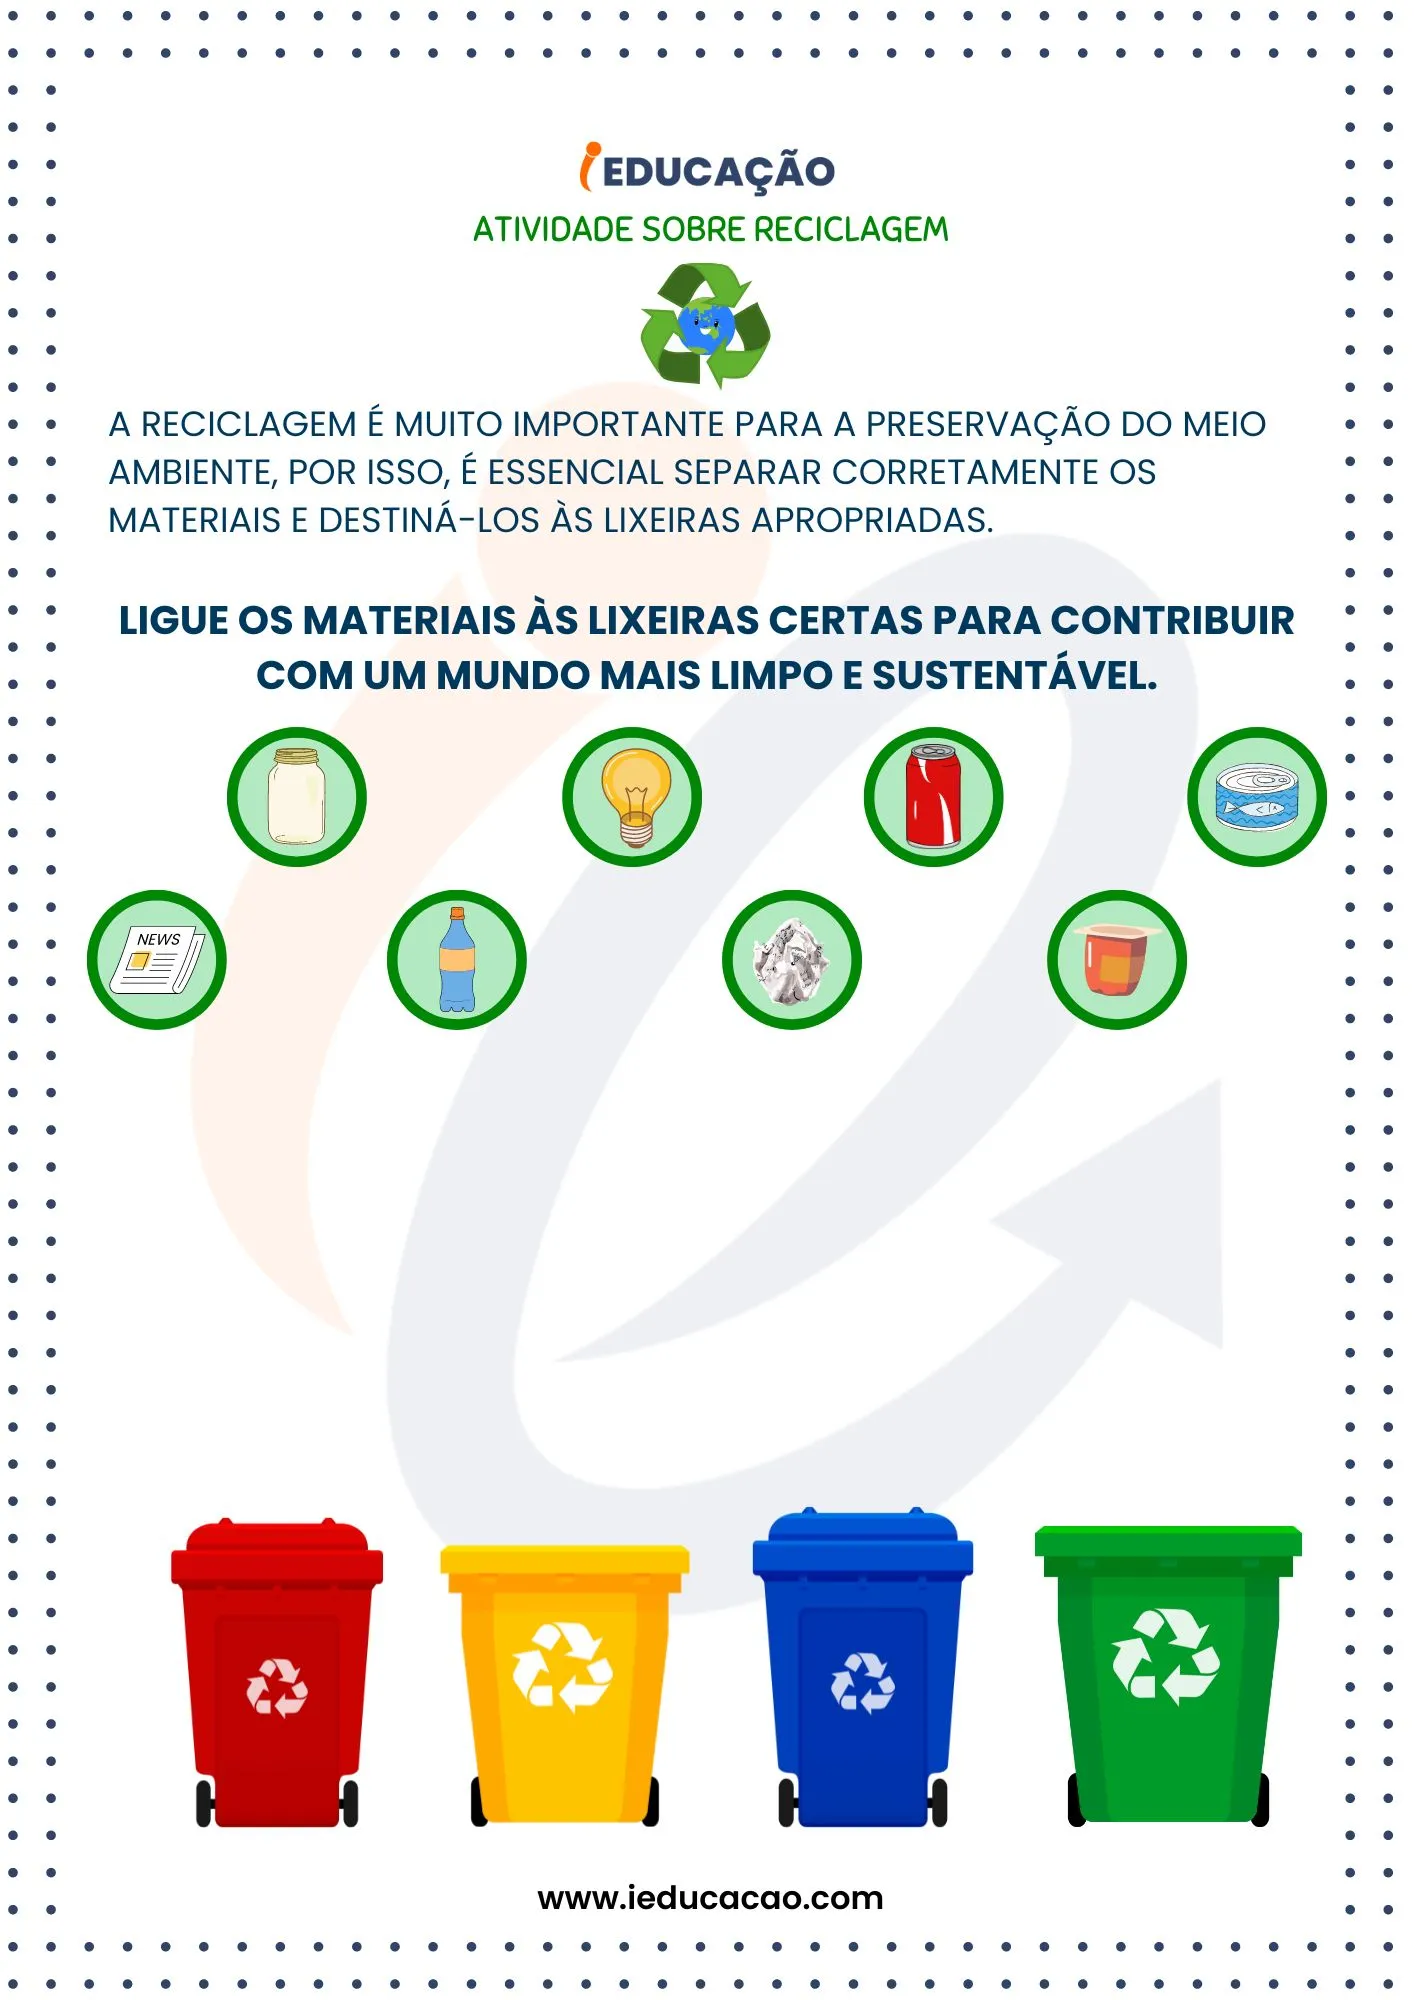 Atividades Sobre Reciclagem na Educação Infantil_